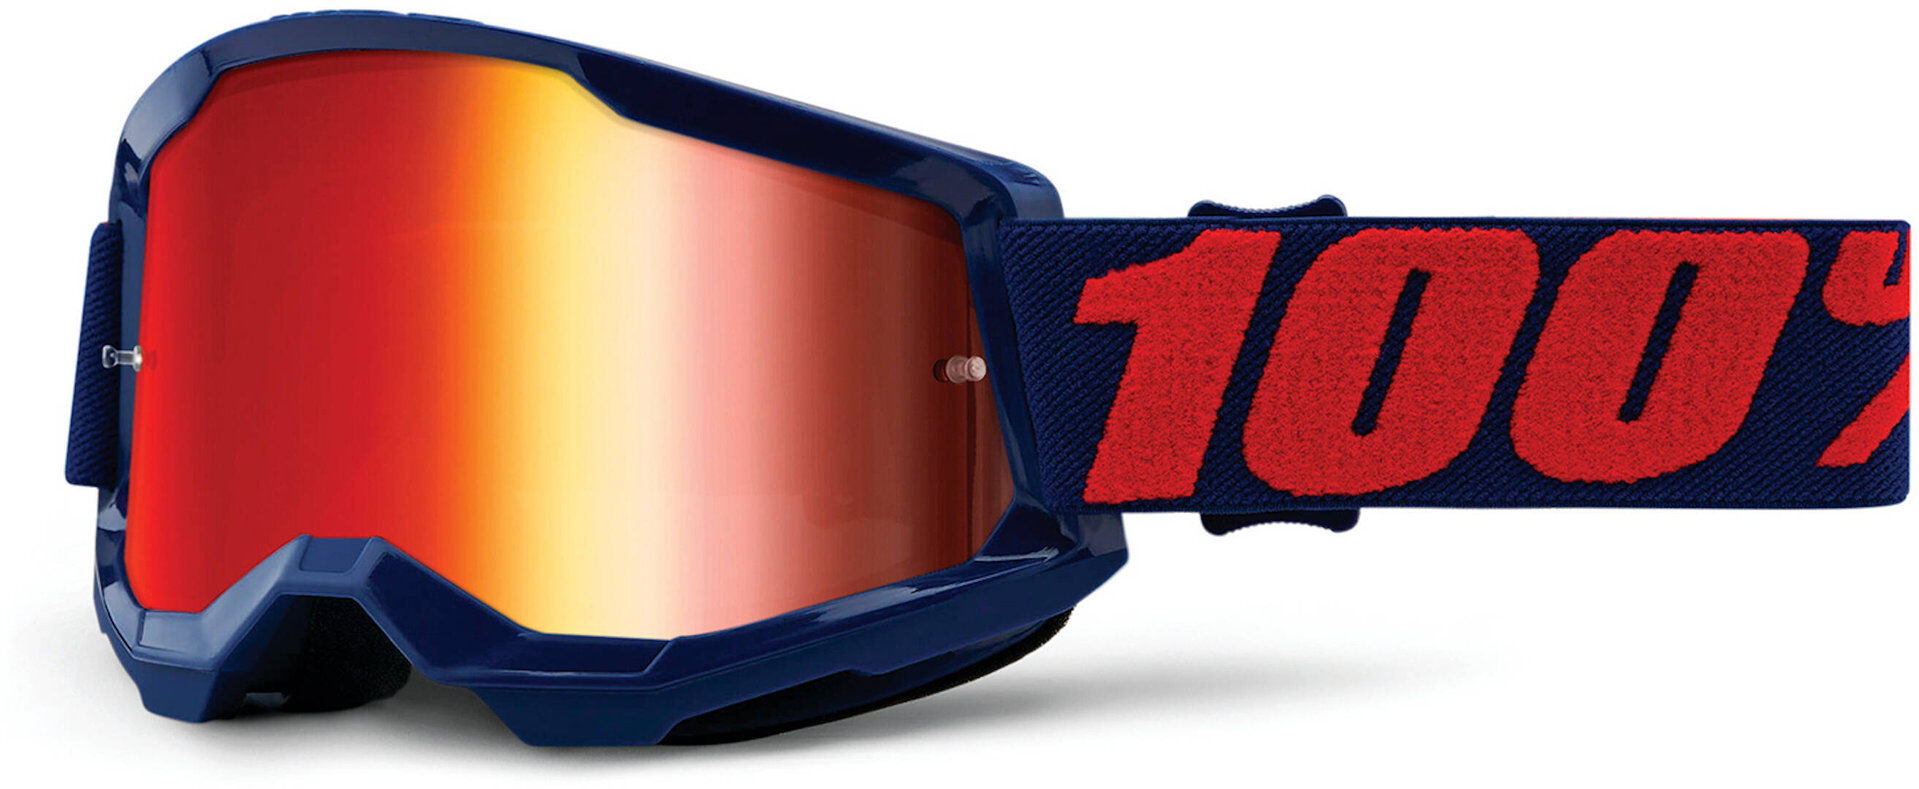 100% Strata 2 Gafas de motocross - Rojo Azul (un tamaño)